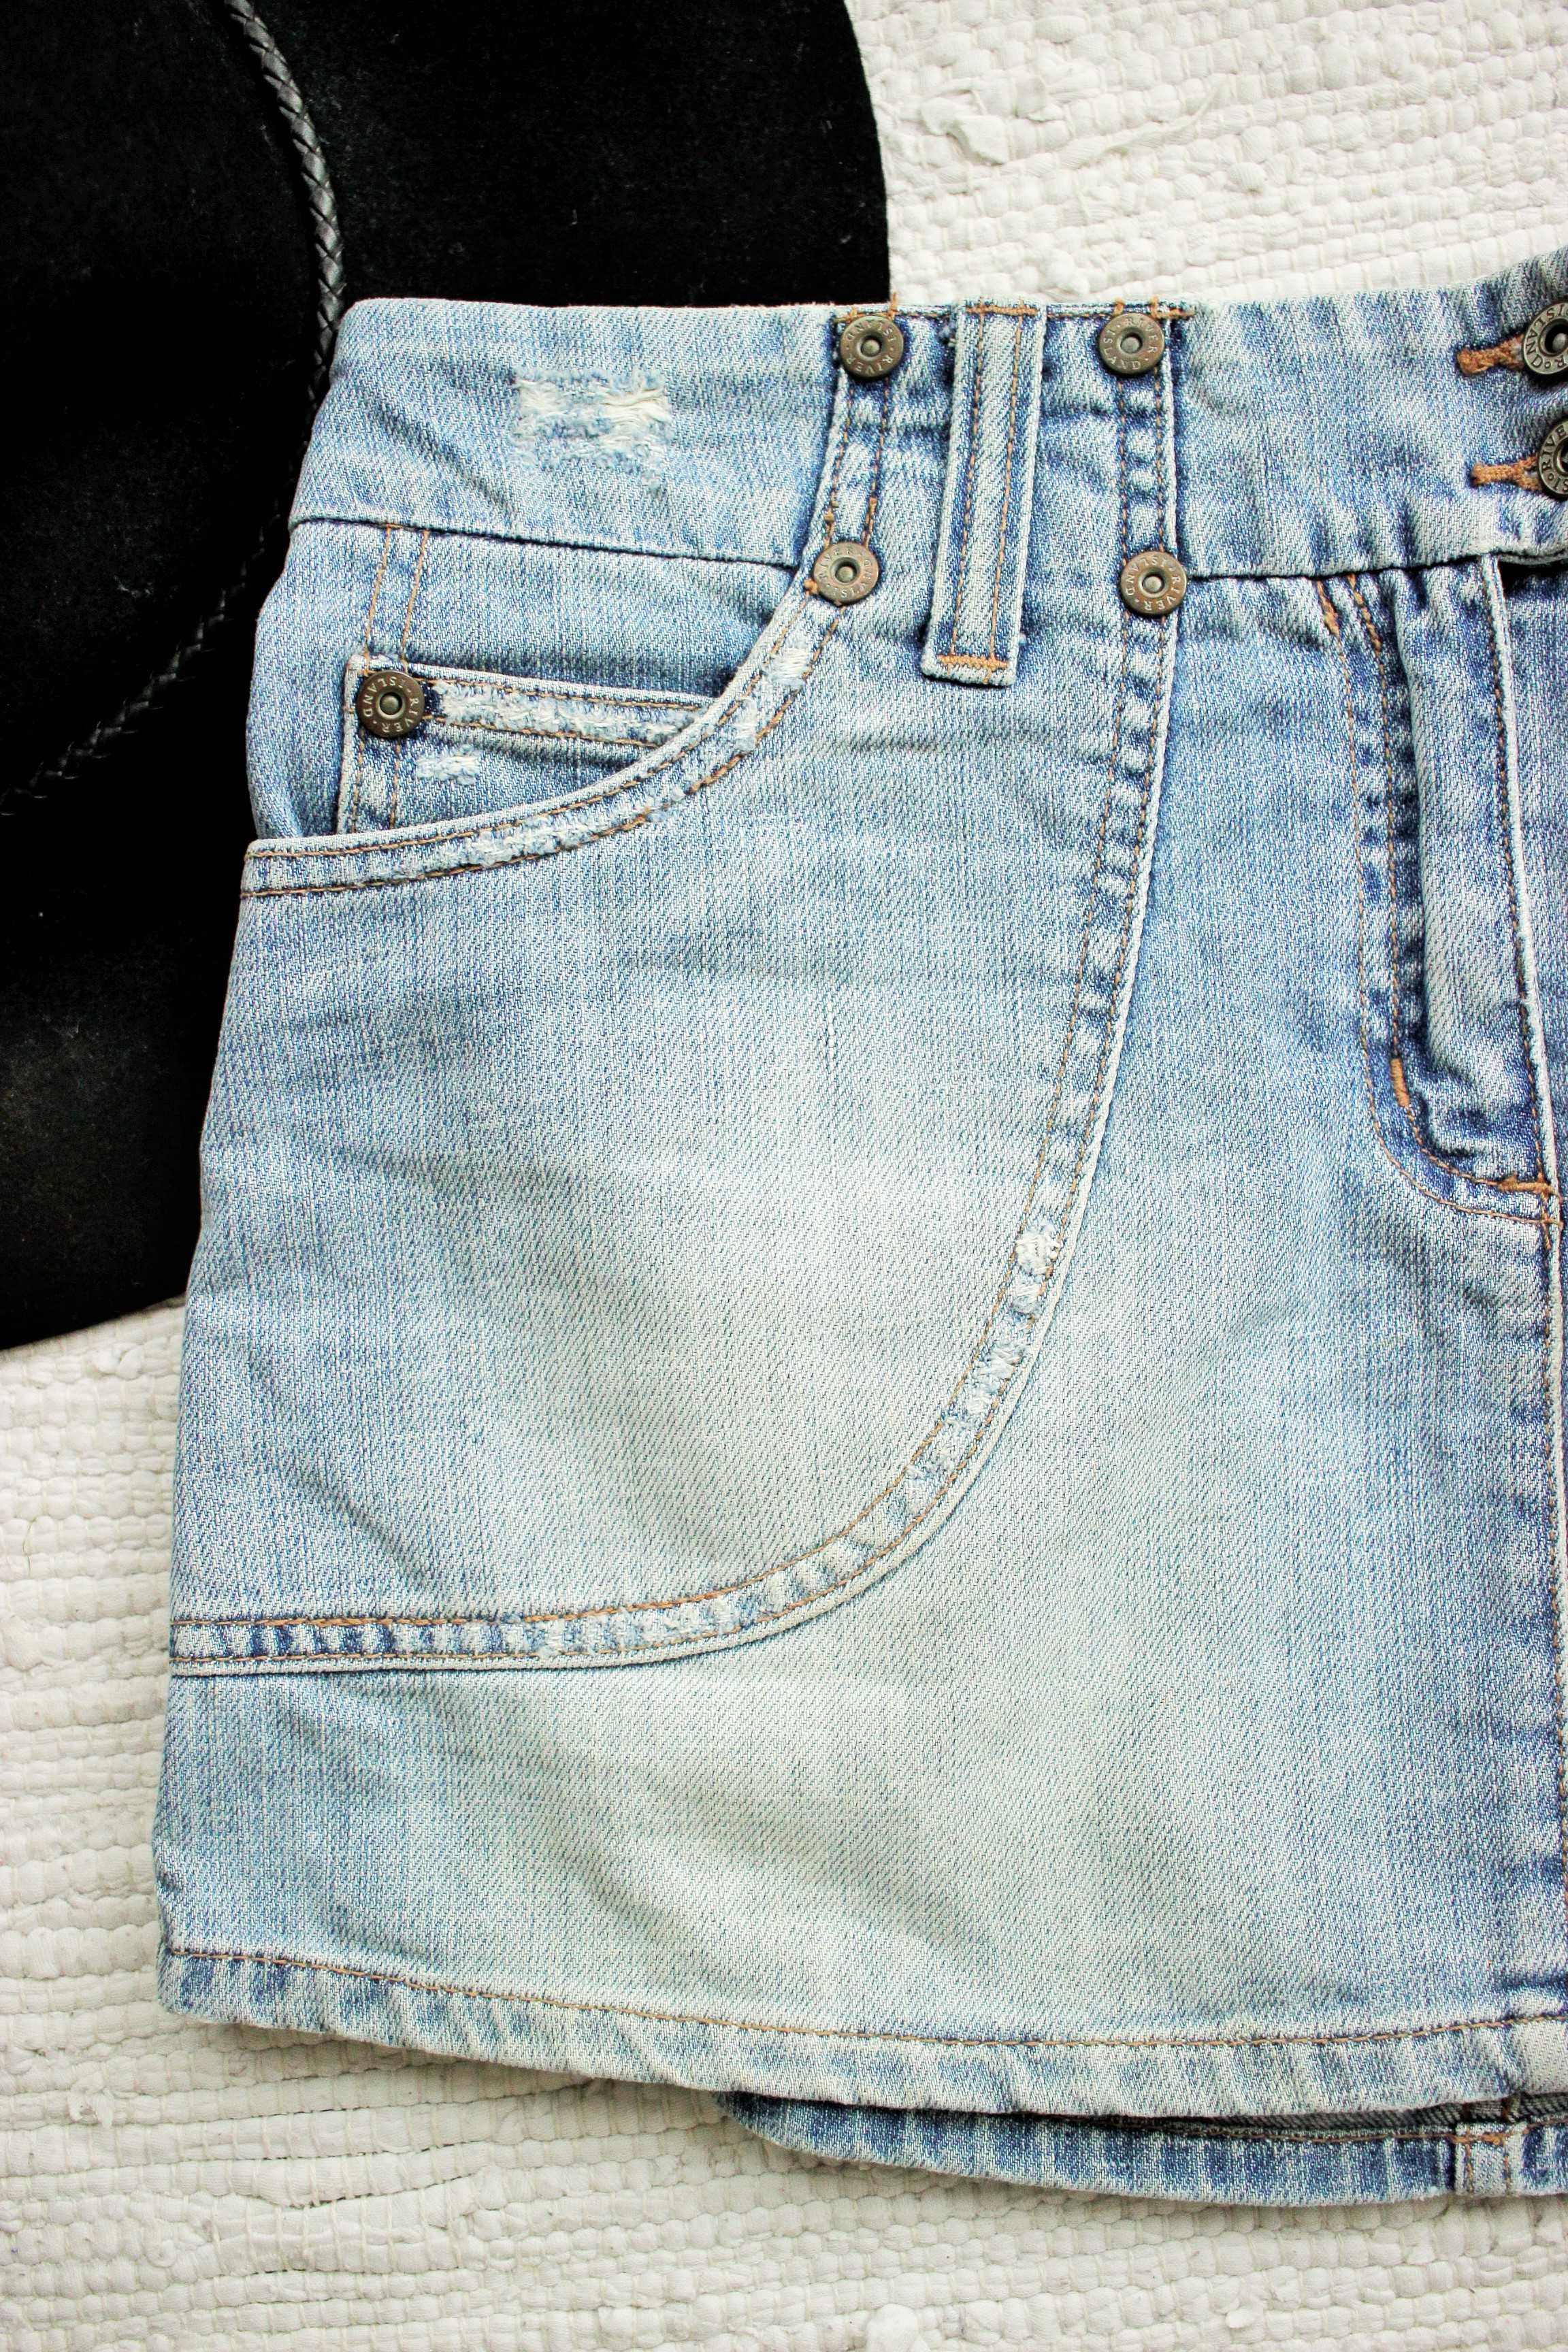 Spódnica mini jeans, rozm.L/40, niebieska, wiosenna, codzienna